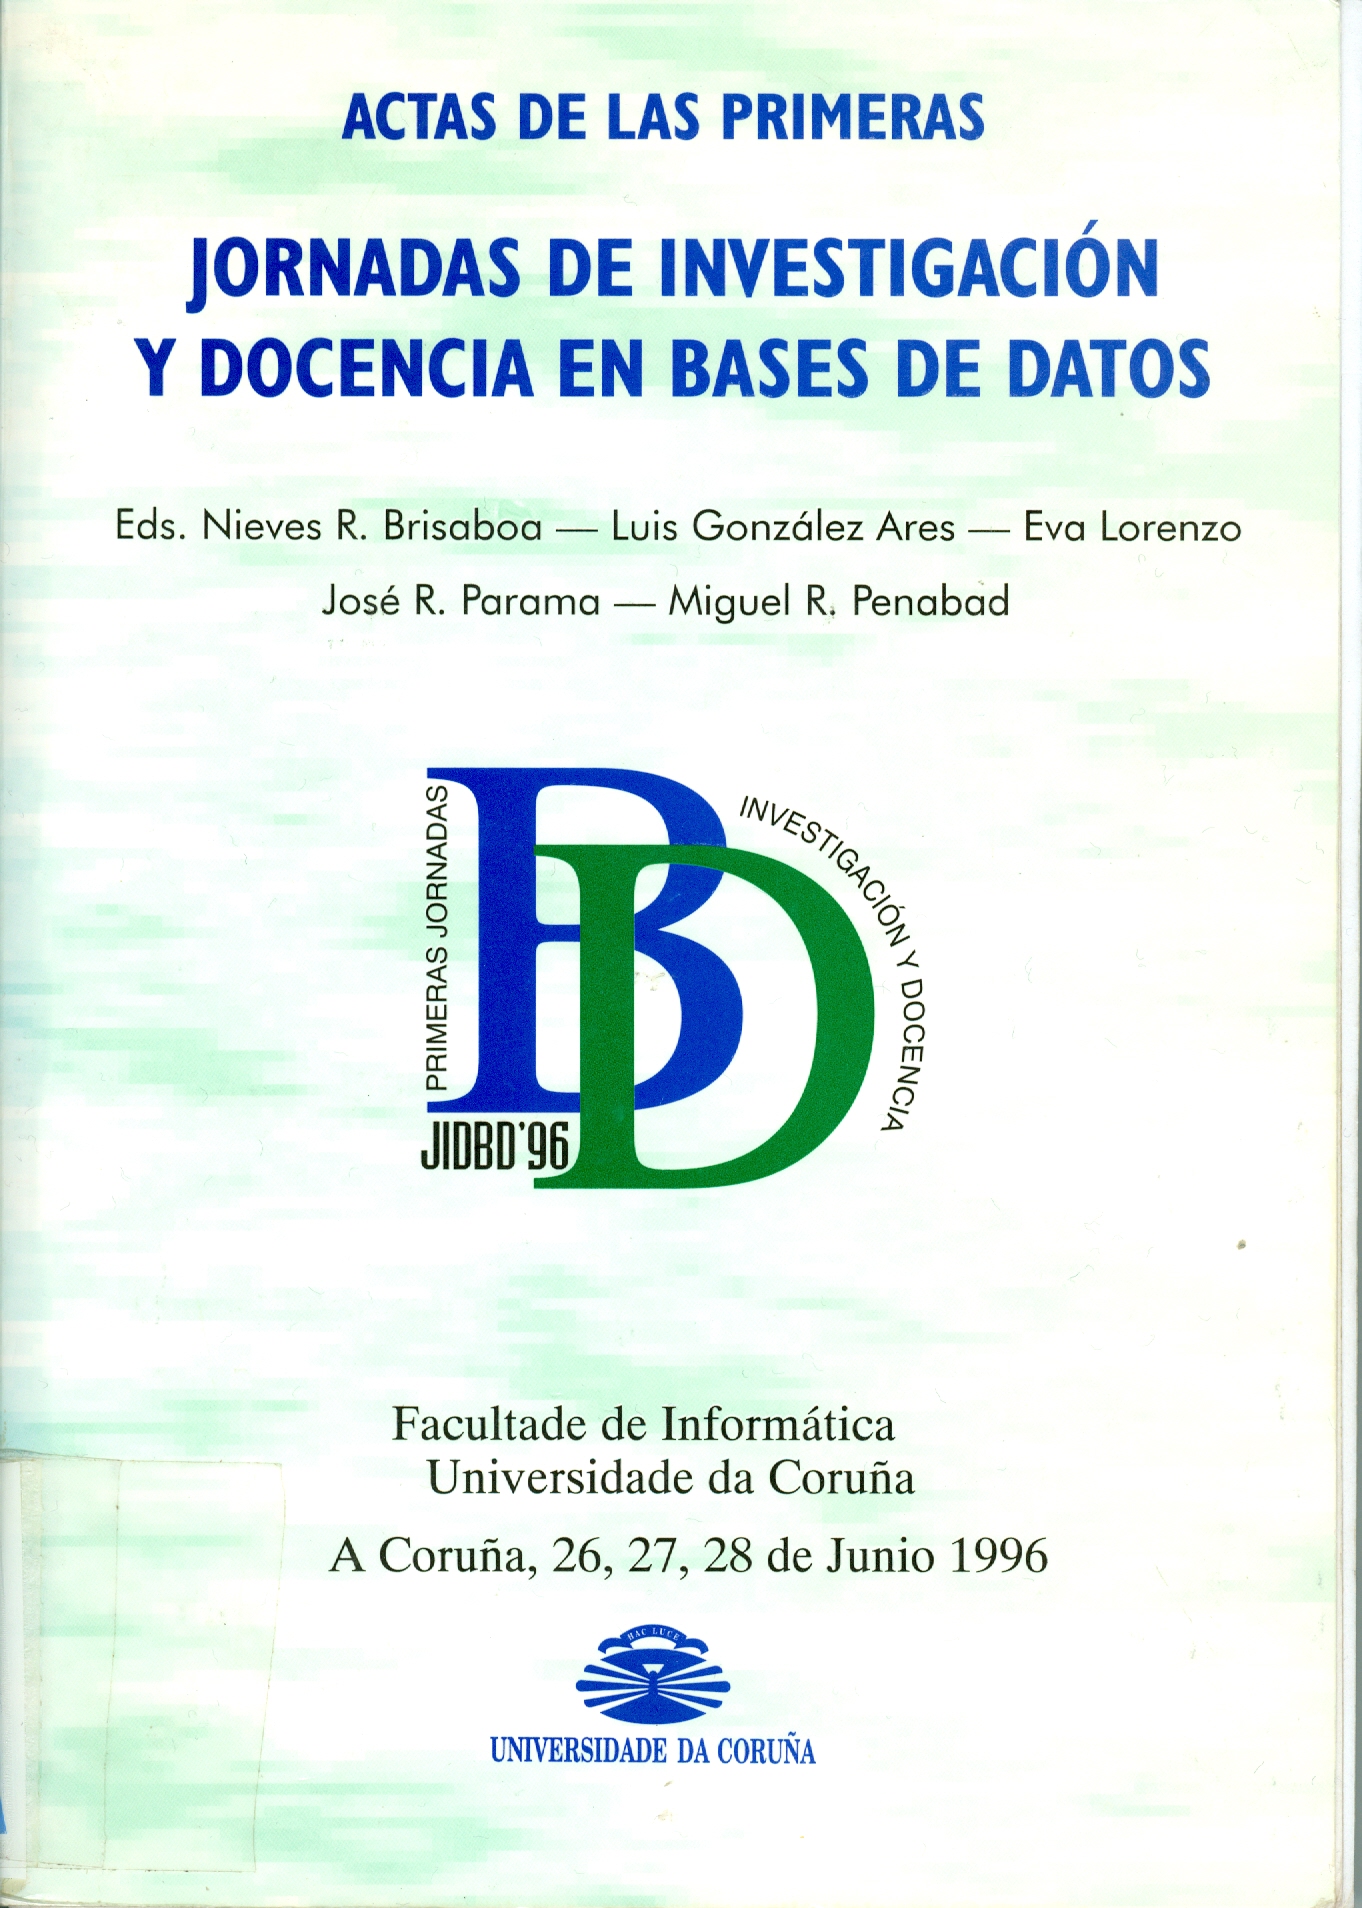 Imagen de portada del libro Actas de las Primeras Jornadas de Investigación y Docencia en Bases de Datos